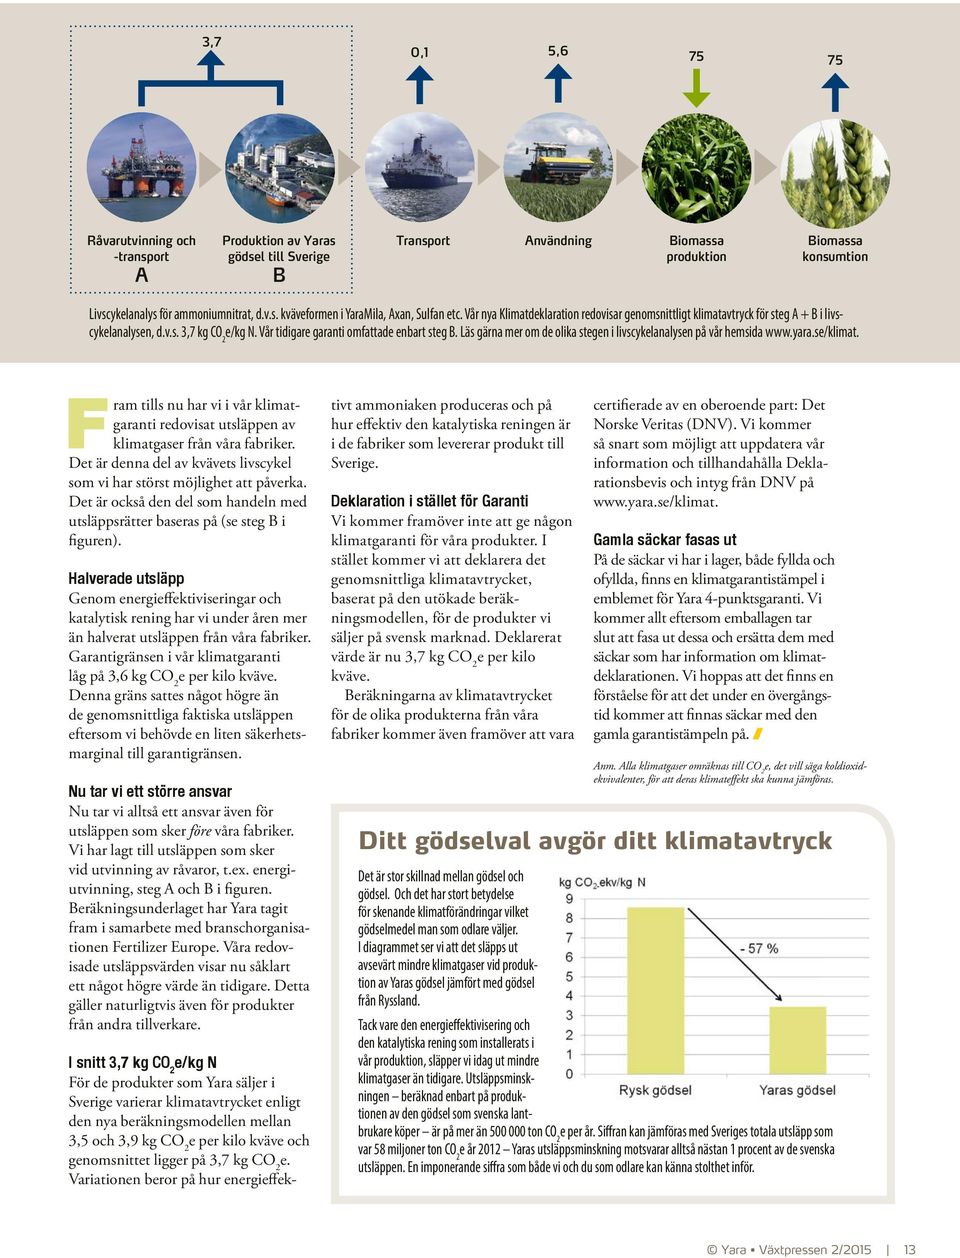 Läs gärna mer om de olika stegen i livscykelanalysen på vår hemsida www.yara.se/klimat. Fram tills nu har vi i vår klimatgaranti redovisat utsläppen av klimatgaser från våra fabriker.